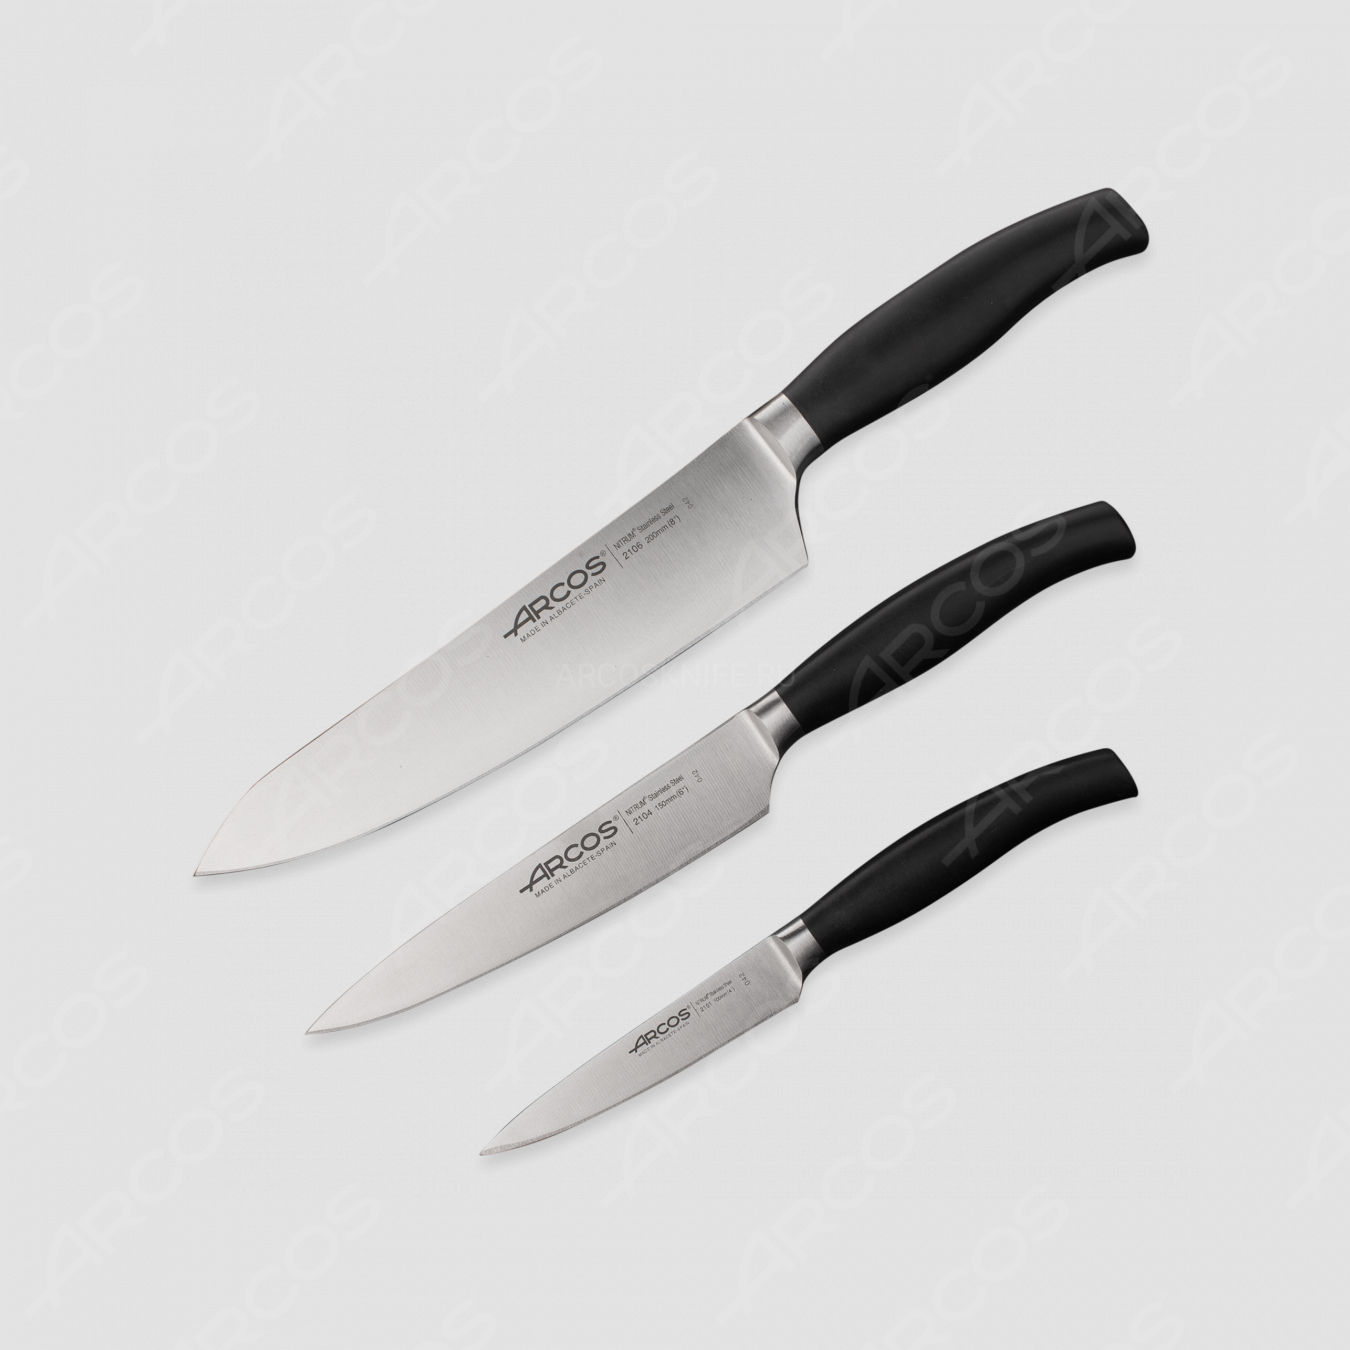 Набор кухонных ножей 3 штуки (10 см, 15 см, 20 см),серия Clara, ARCOS, Испания